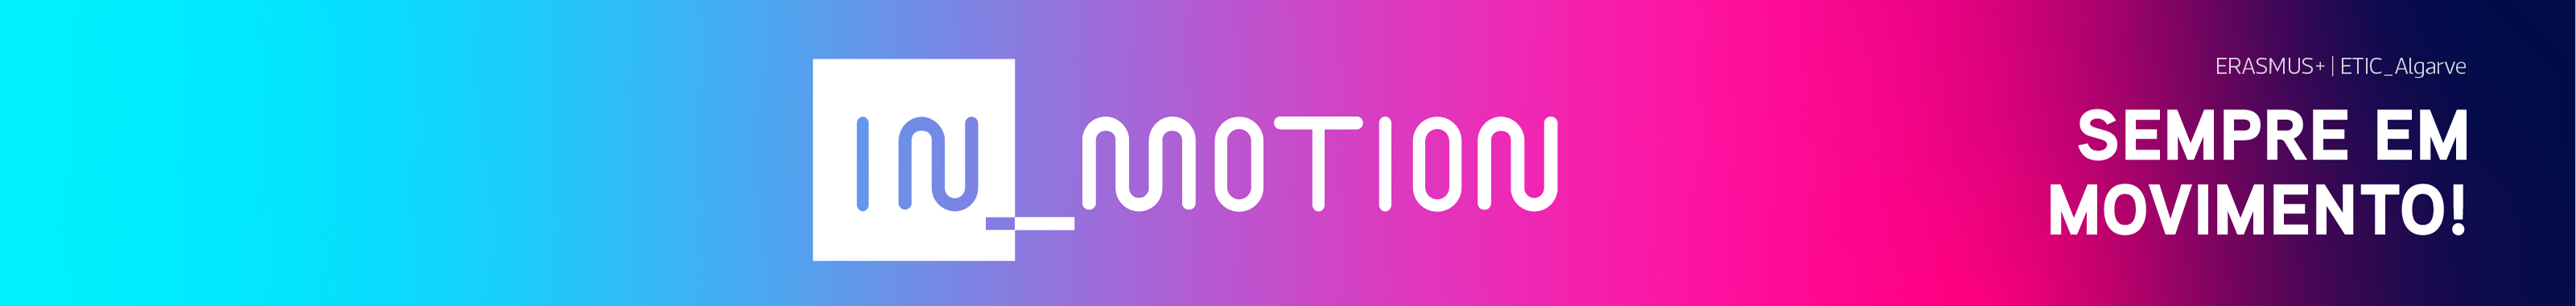 ETIC_Algarve In_Motion's profile banner